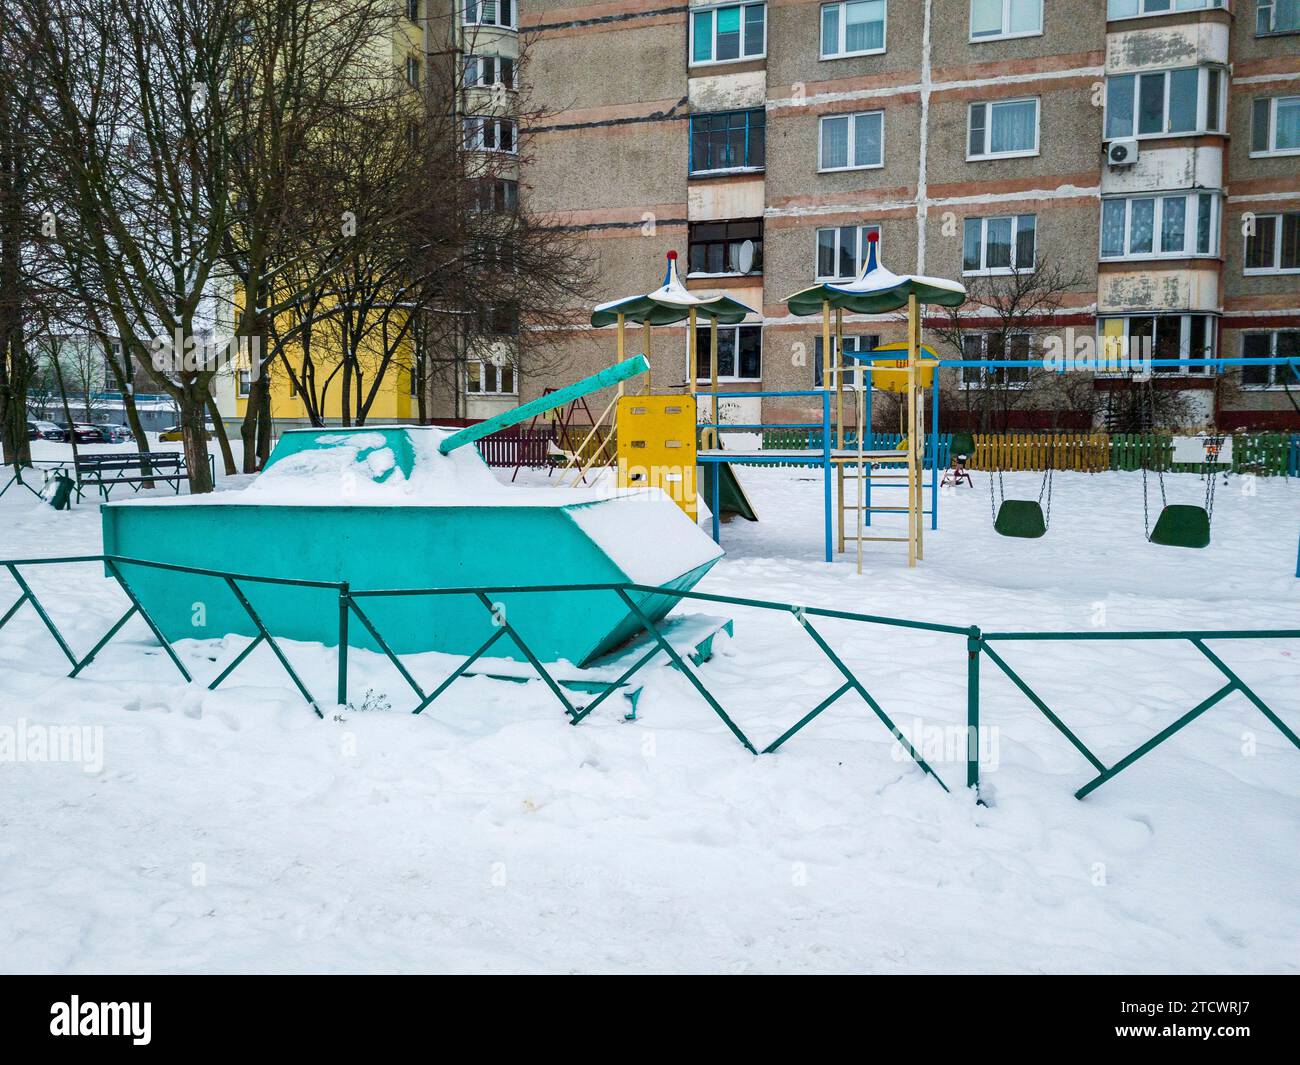 Aufnahme des Spielplatzes aus der sowjetzeit in der kleinen ländlichen russischen Stadt Stockfoto